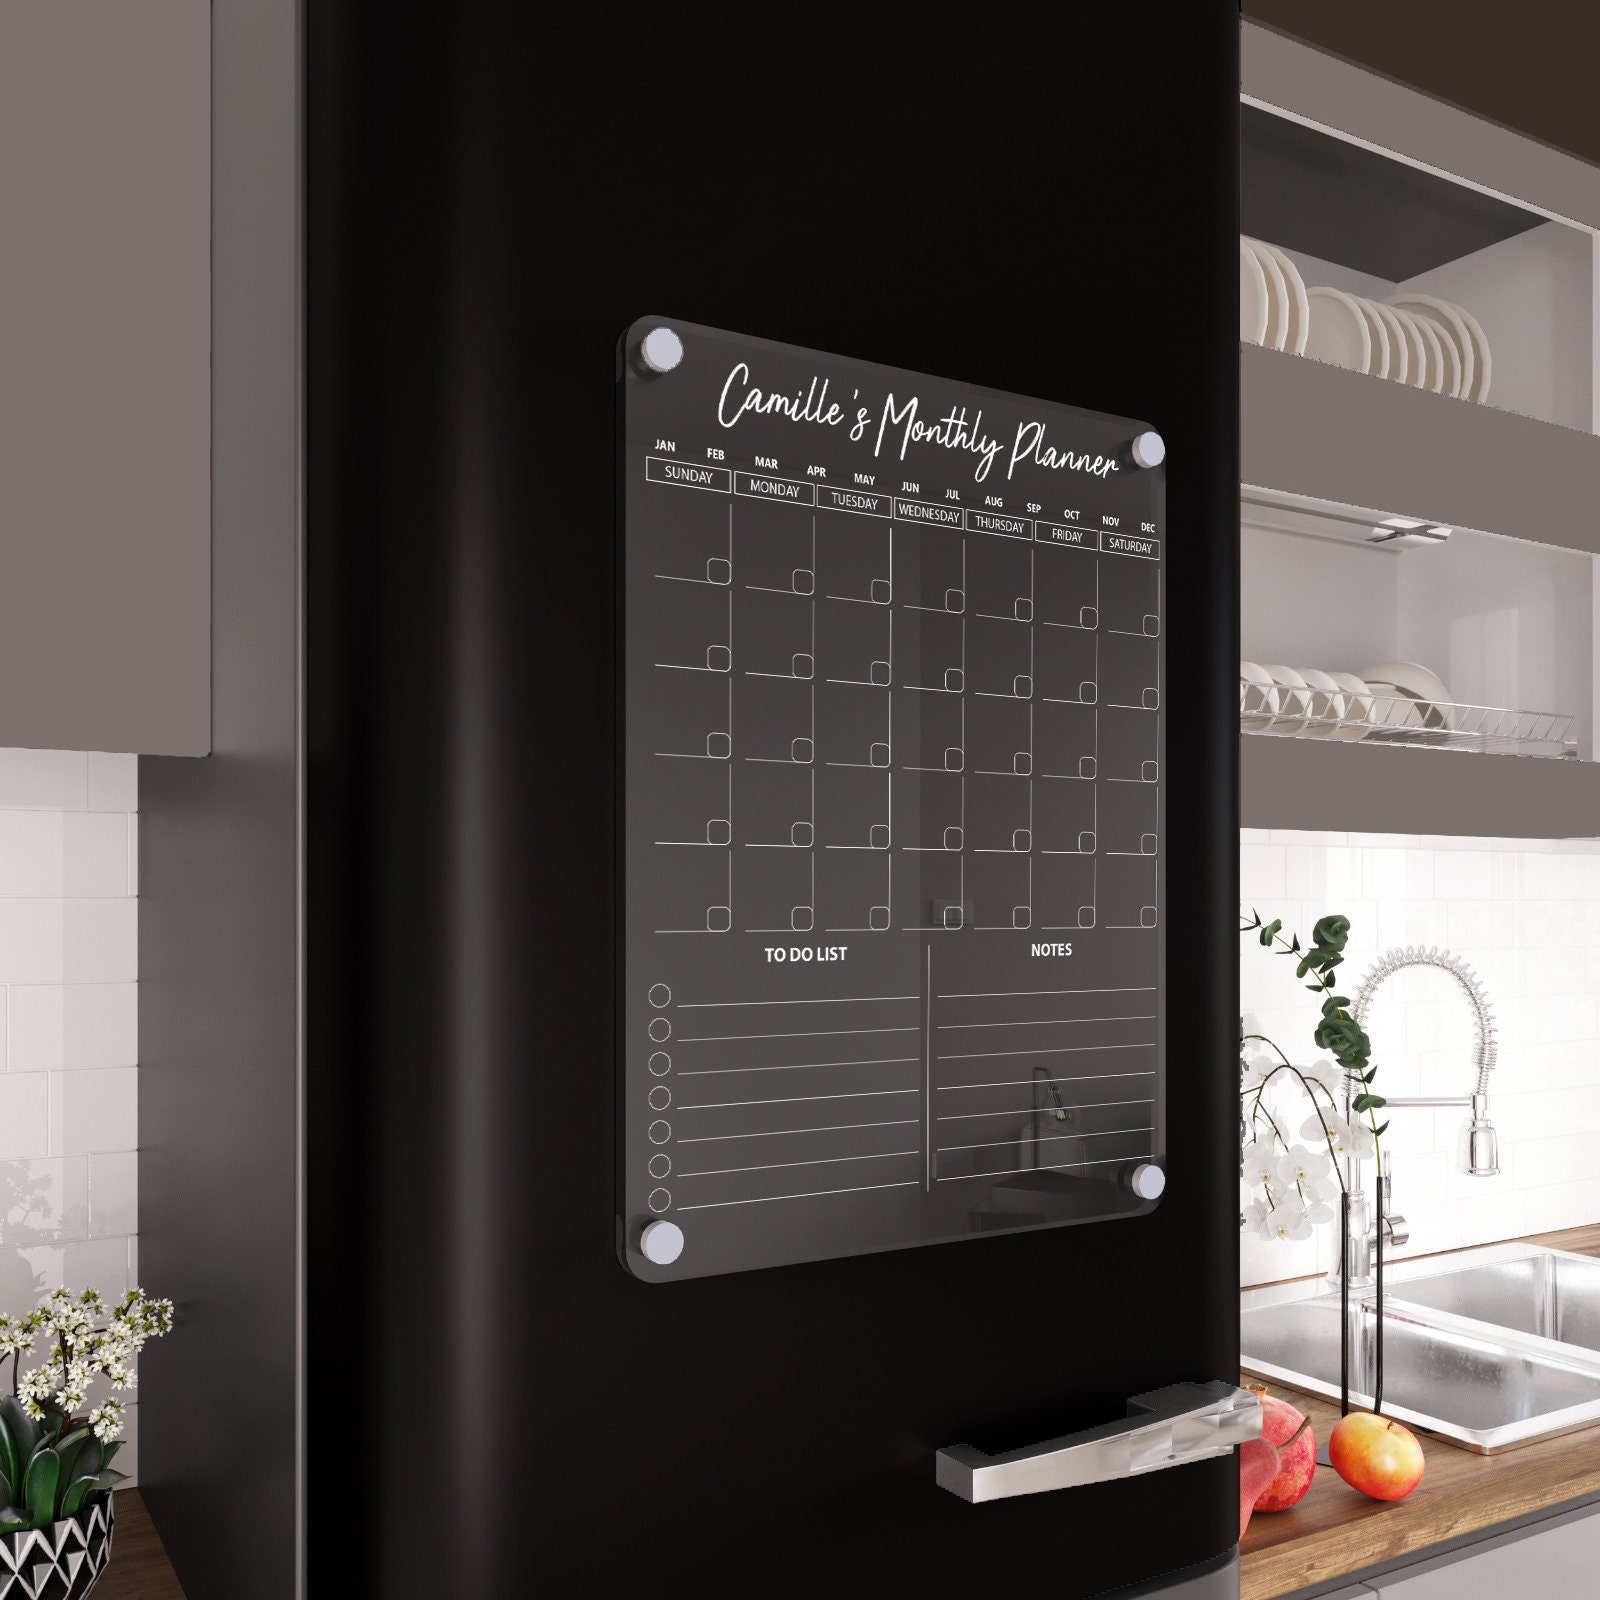 Calendrier familial de frigo 9.5 x15 - Planificat./calendrier